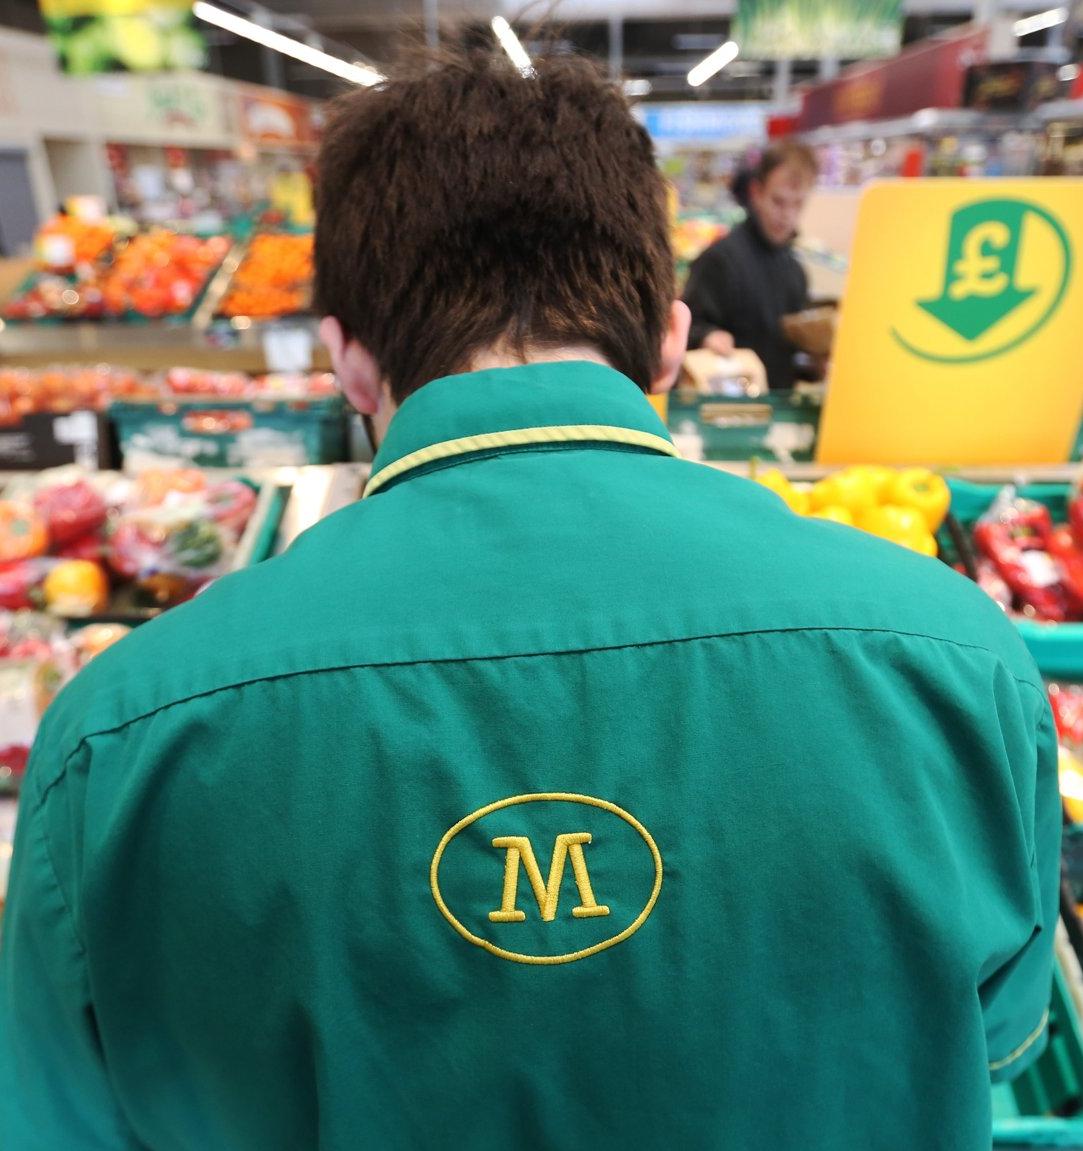 Британский супермаркет будет продавать овощи и фрукты без пластиковой упаковки